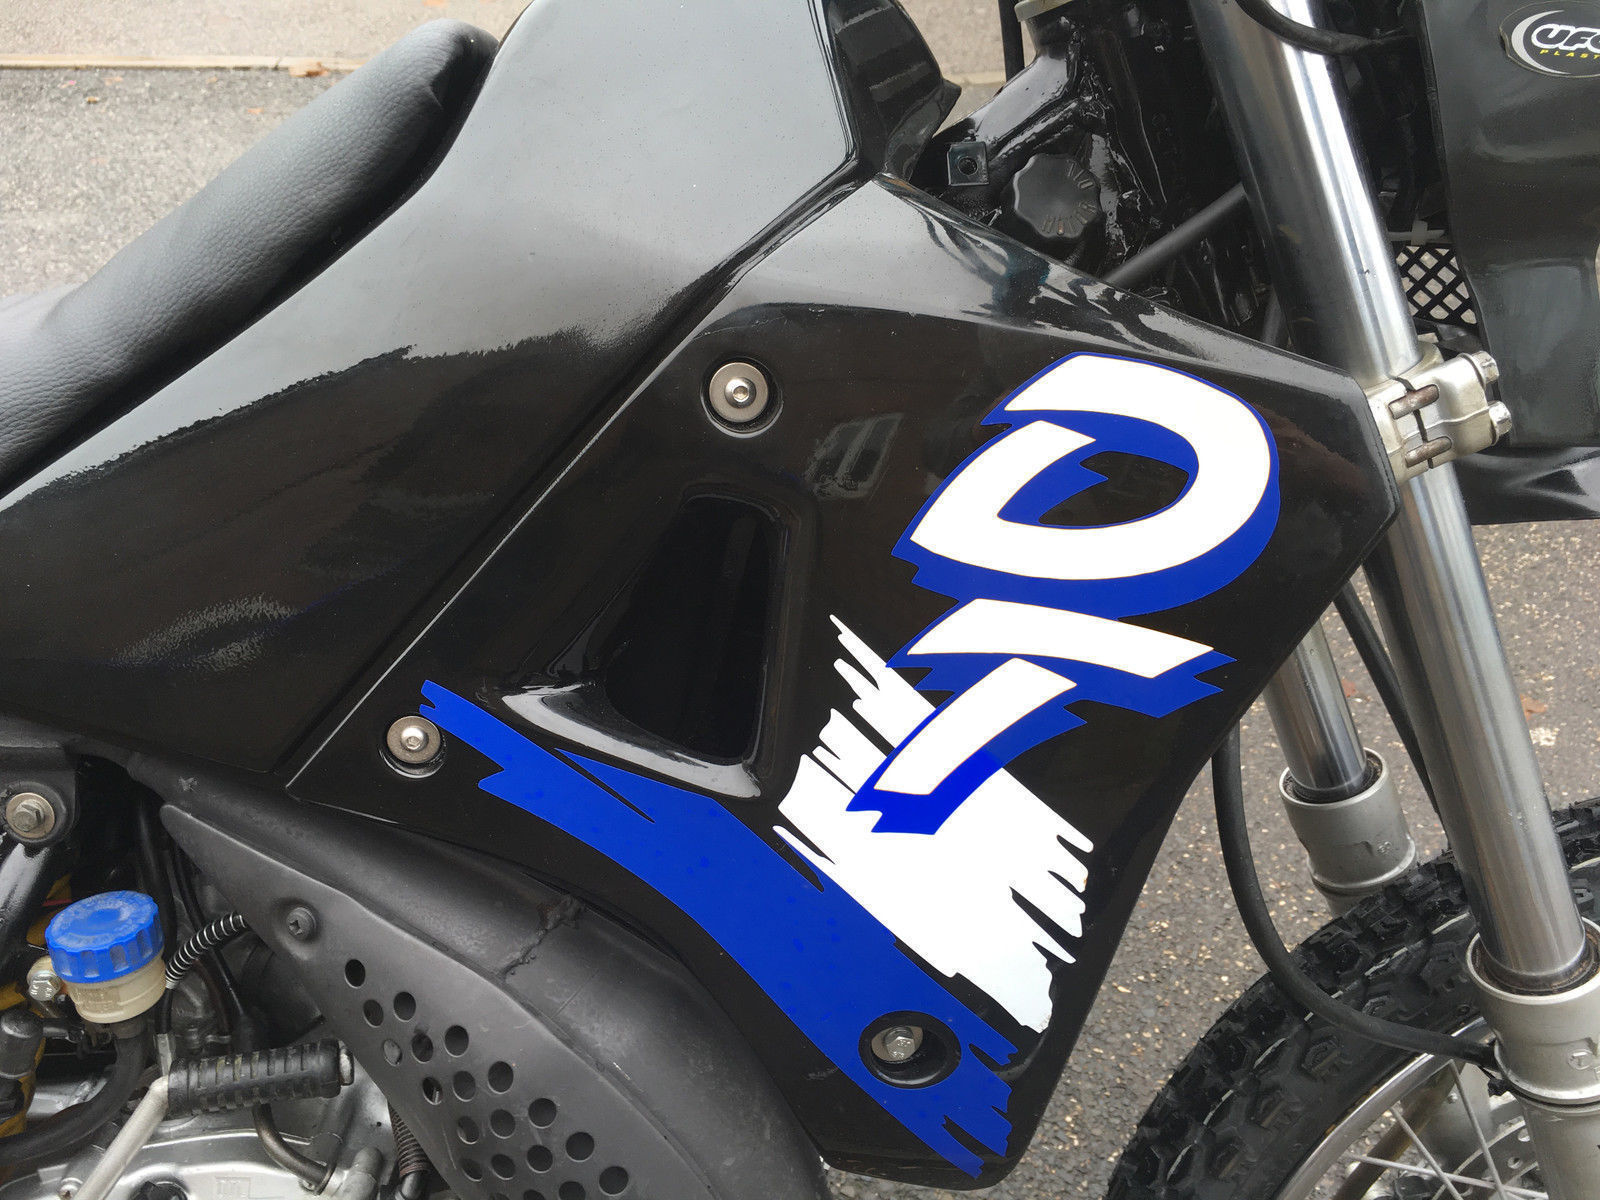 DT DTR 125 1988-2004 Decals Graphics Sticker Kit Blue or Black Bike set.